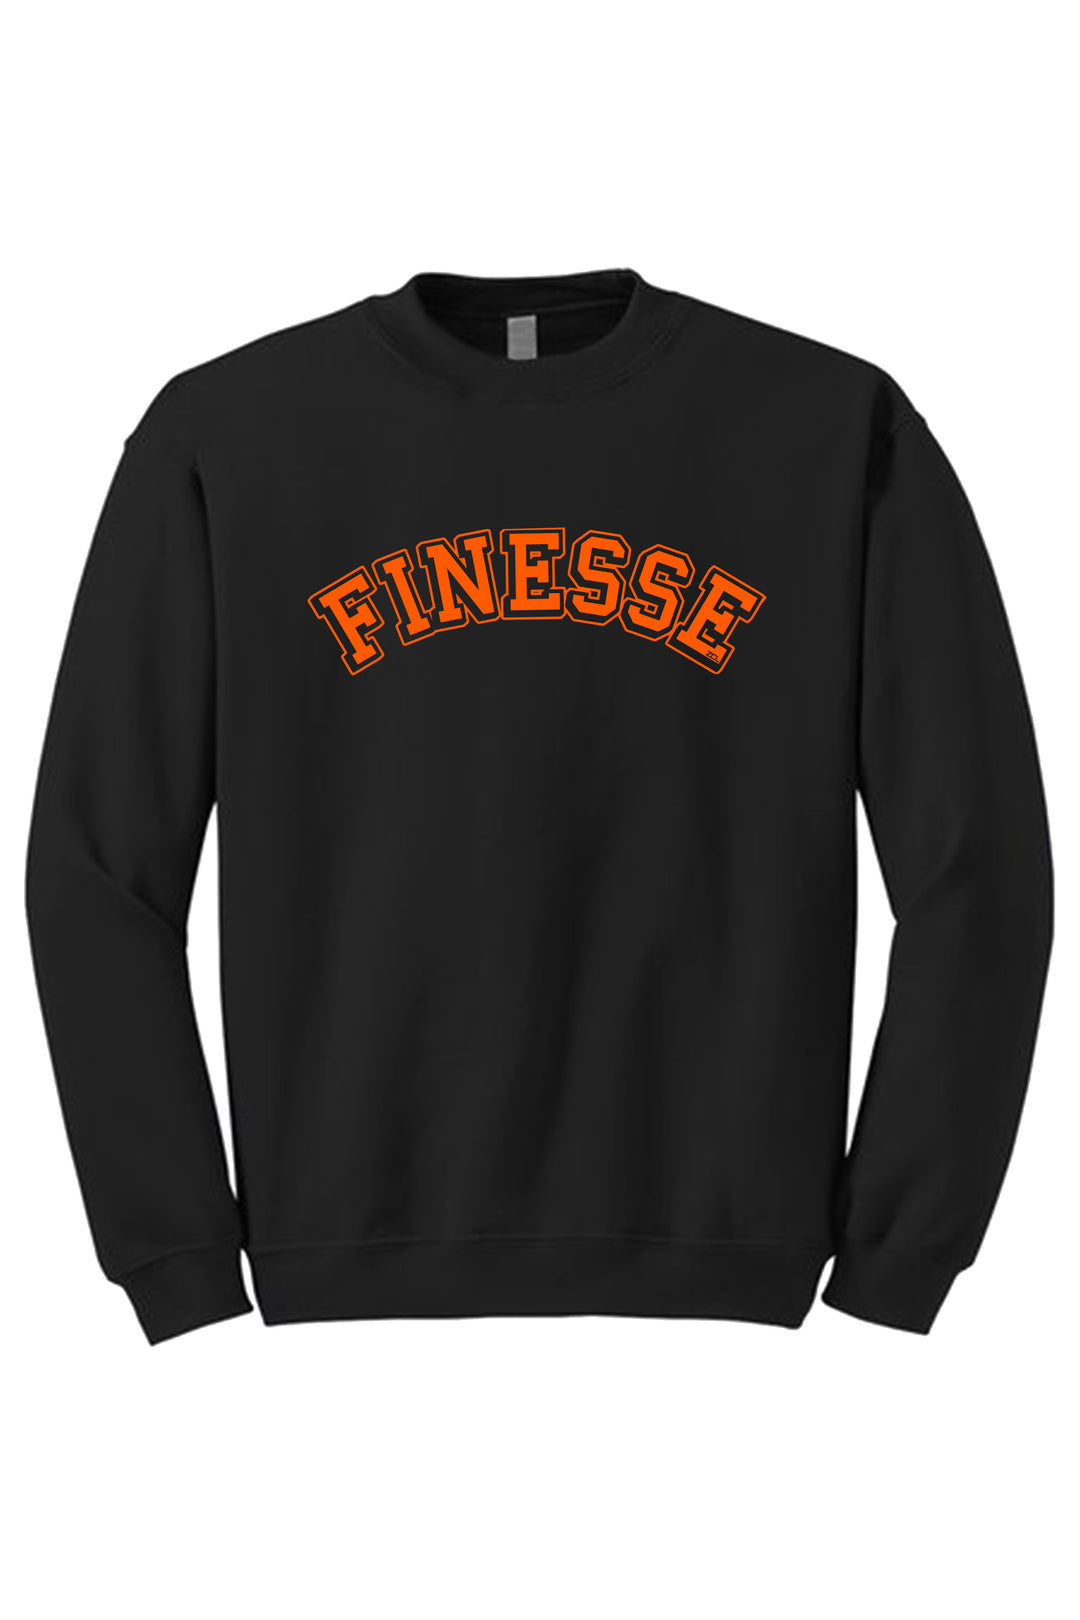 Finesse Crewneck Sweatshirt (Orange Logo) - Zamage